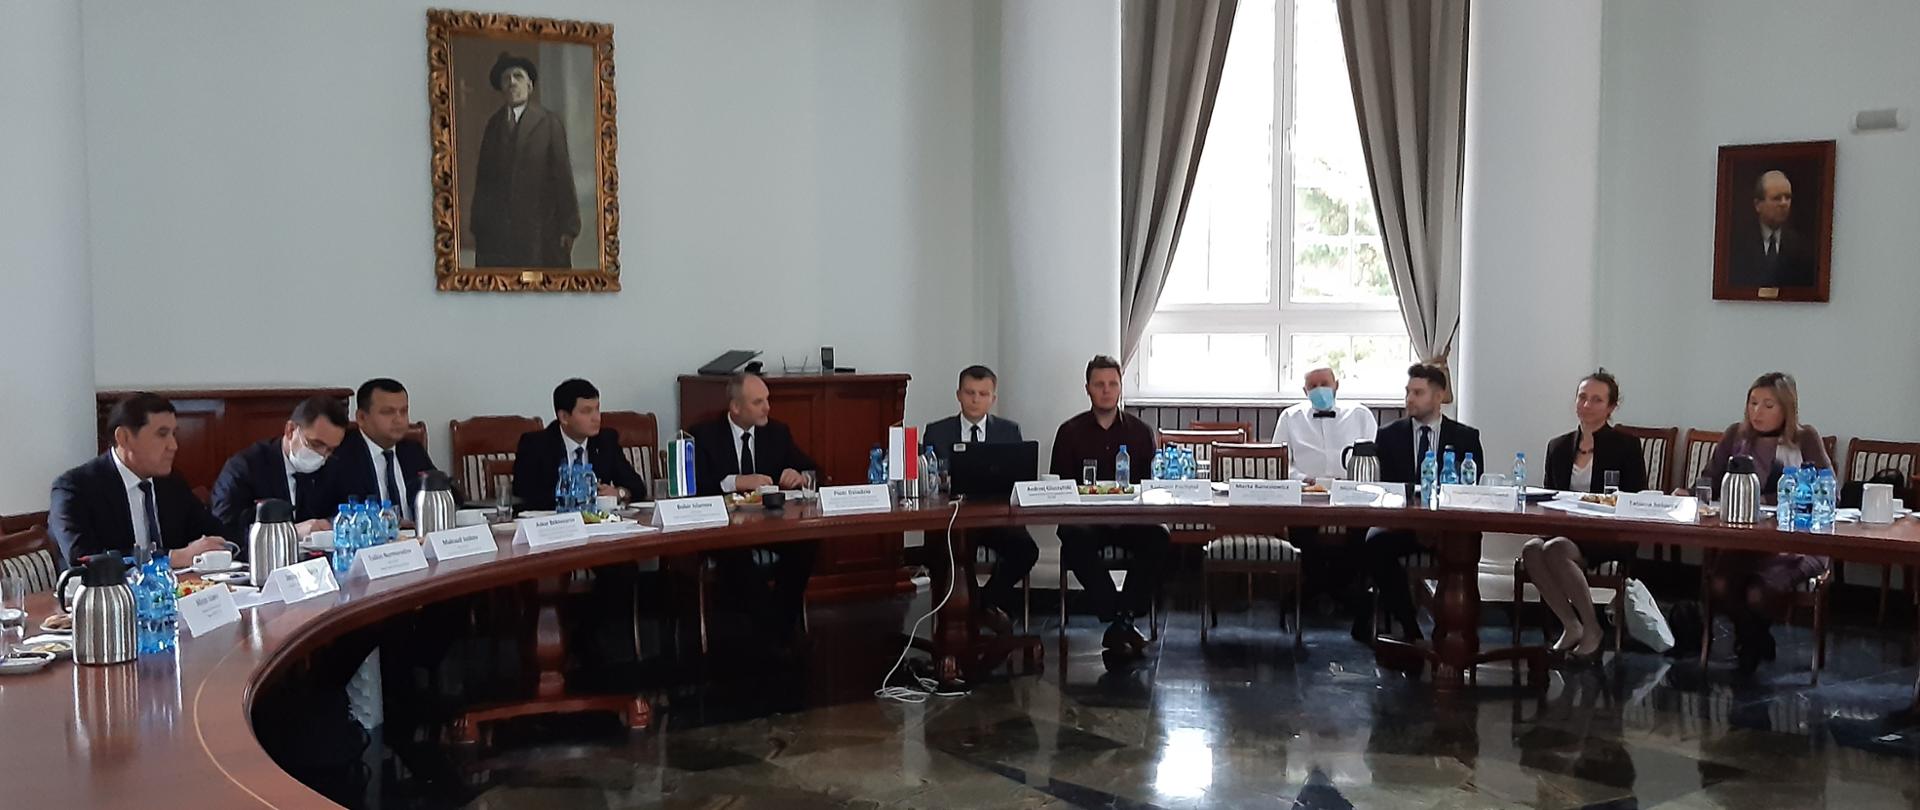 Wiceminister klimatu i środowiska Piotr Dziadzio podczas spotkania z delegacją Uzbekistanu